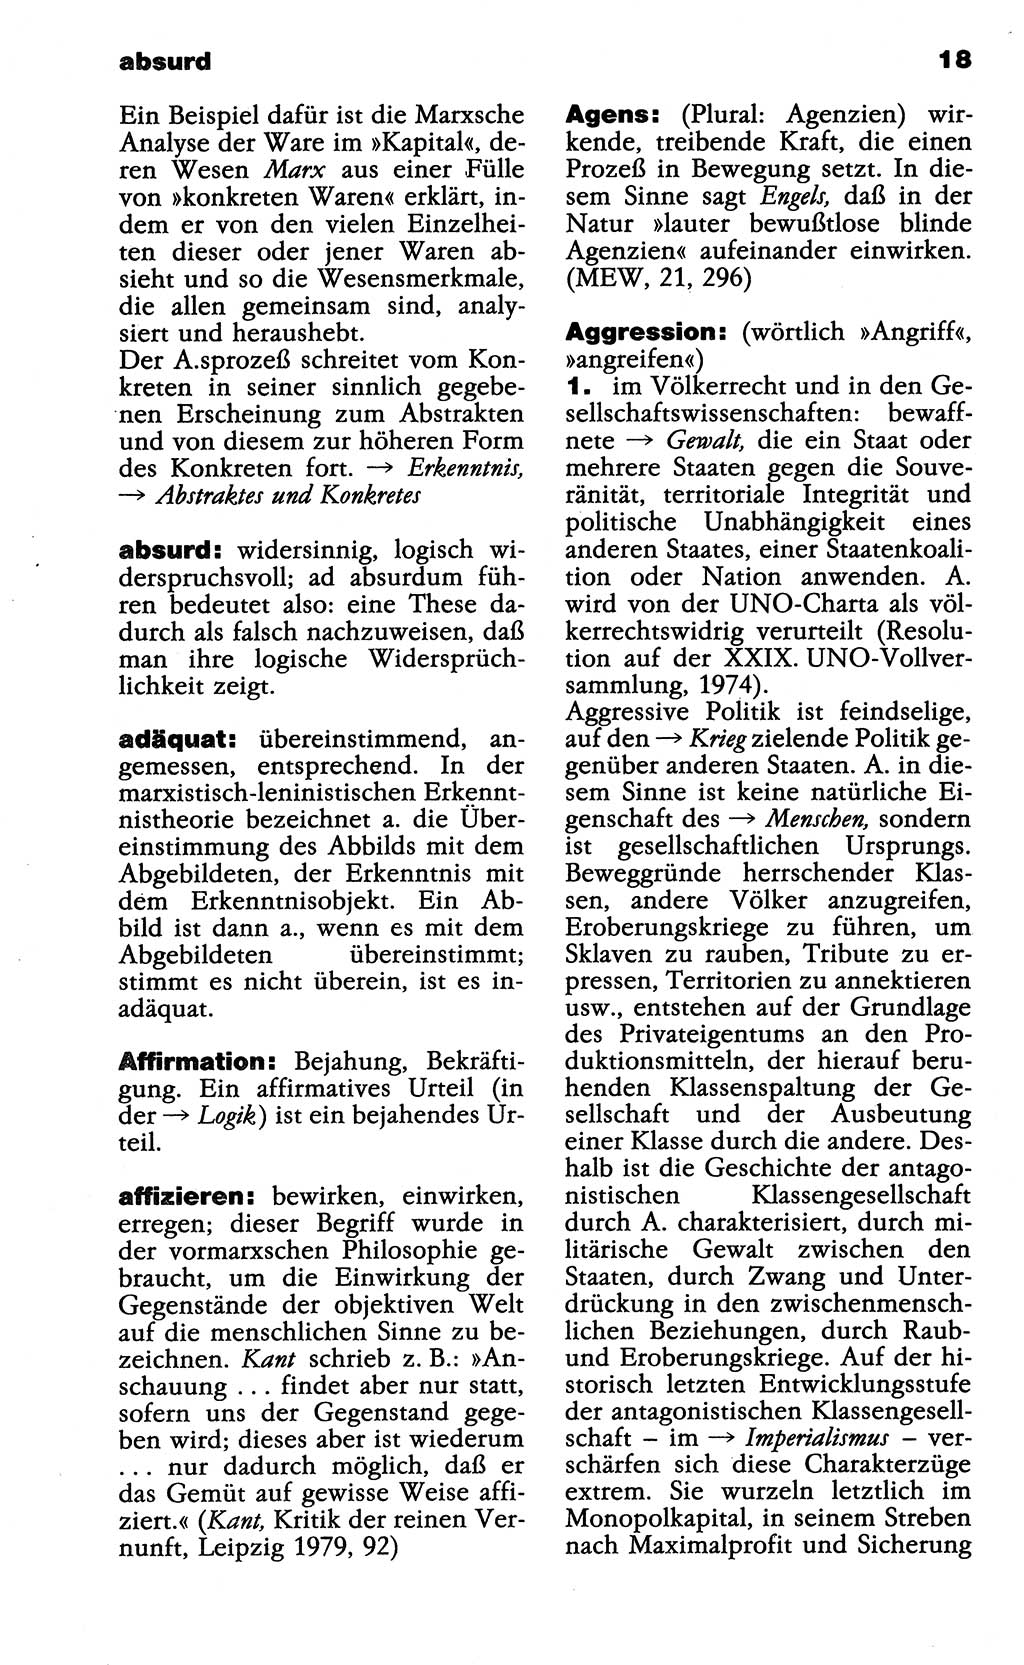 Wörterbuch der marxistisch-leninistischen Philosophie [Deutsche Demokratische Republik (DDR)] 1985, Seite 18 (Wb. ML Phil. DDR 1985, S. 18)